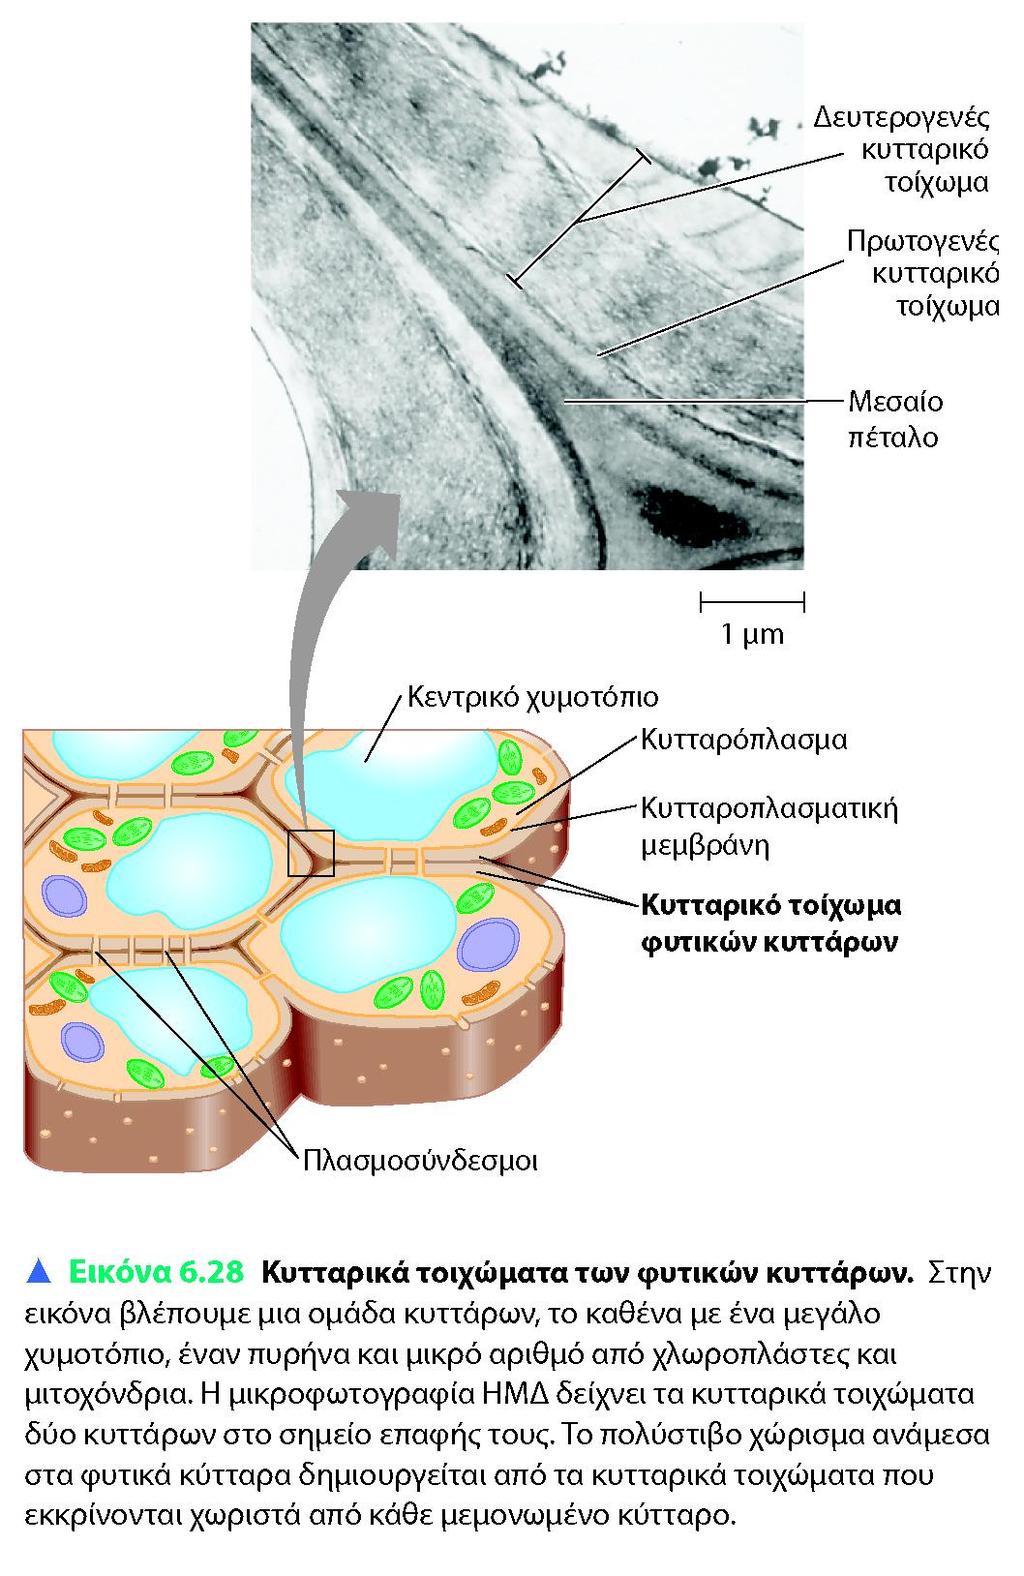 Εξωκυττάρια δομή στήριξης, διατήρηση σχήματος και αποτροπής υπερβολικής πρόσληψης νερού Από μικροινίδια κυτταρίνης με τη δράση της συνθάσης και πολυσακχαρίτες και άλλες πρωτείνες (στρώμα) Τα νεαρά